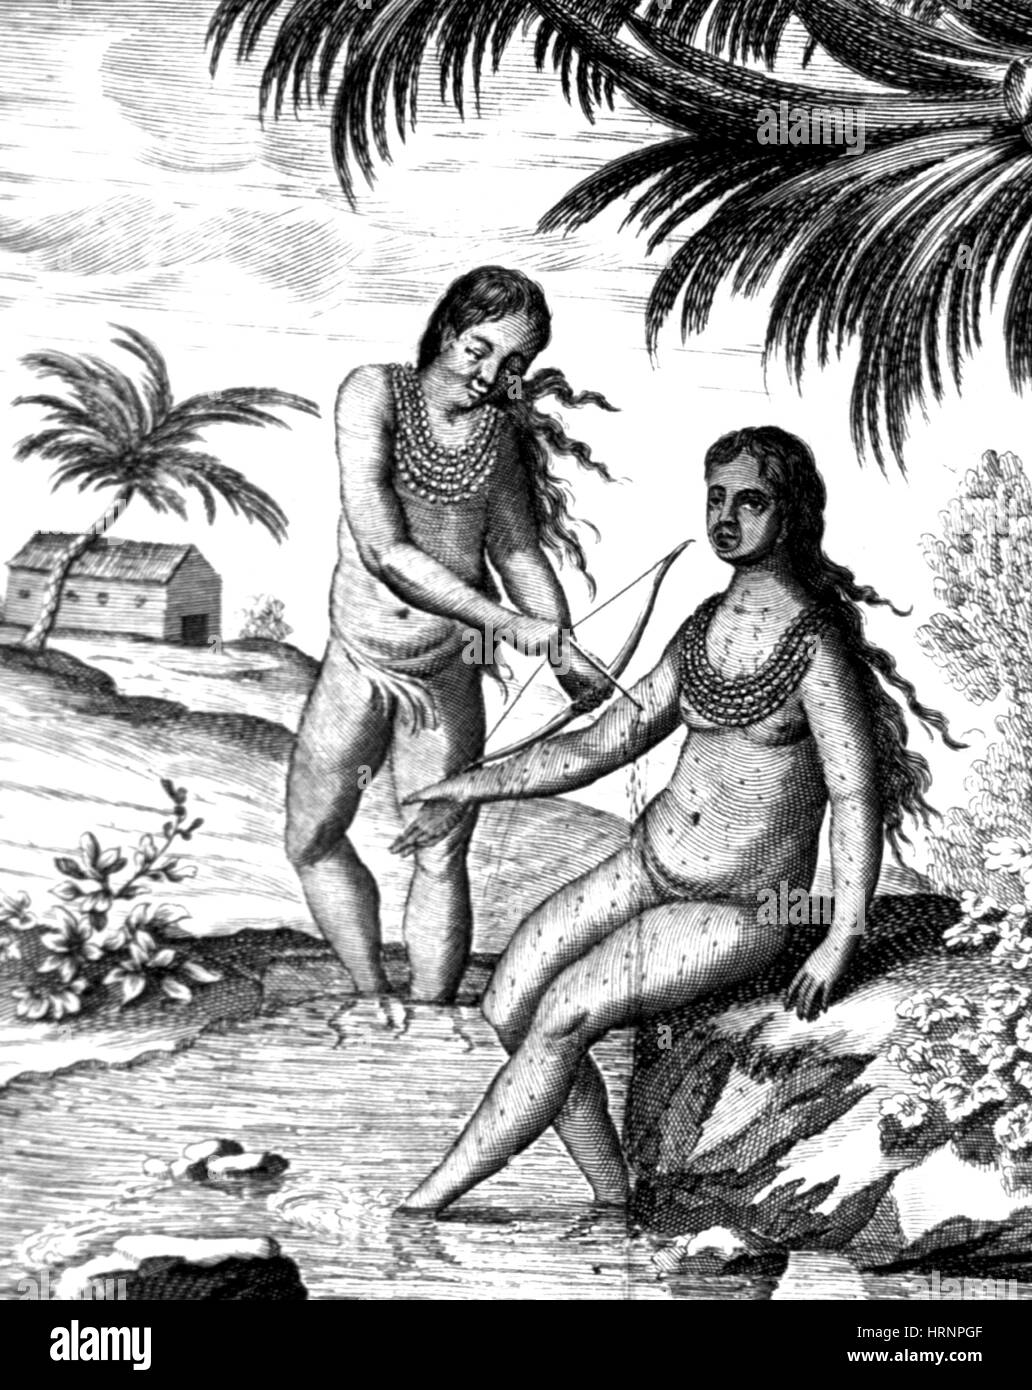 La saignée, les Indiens d'Amérique centrale, 17e siècle Banque D'Images